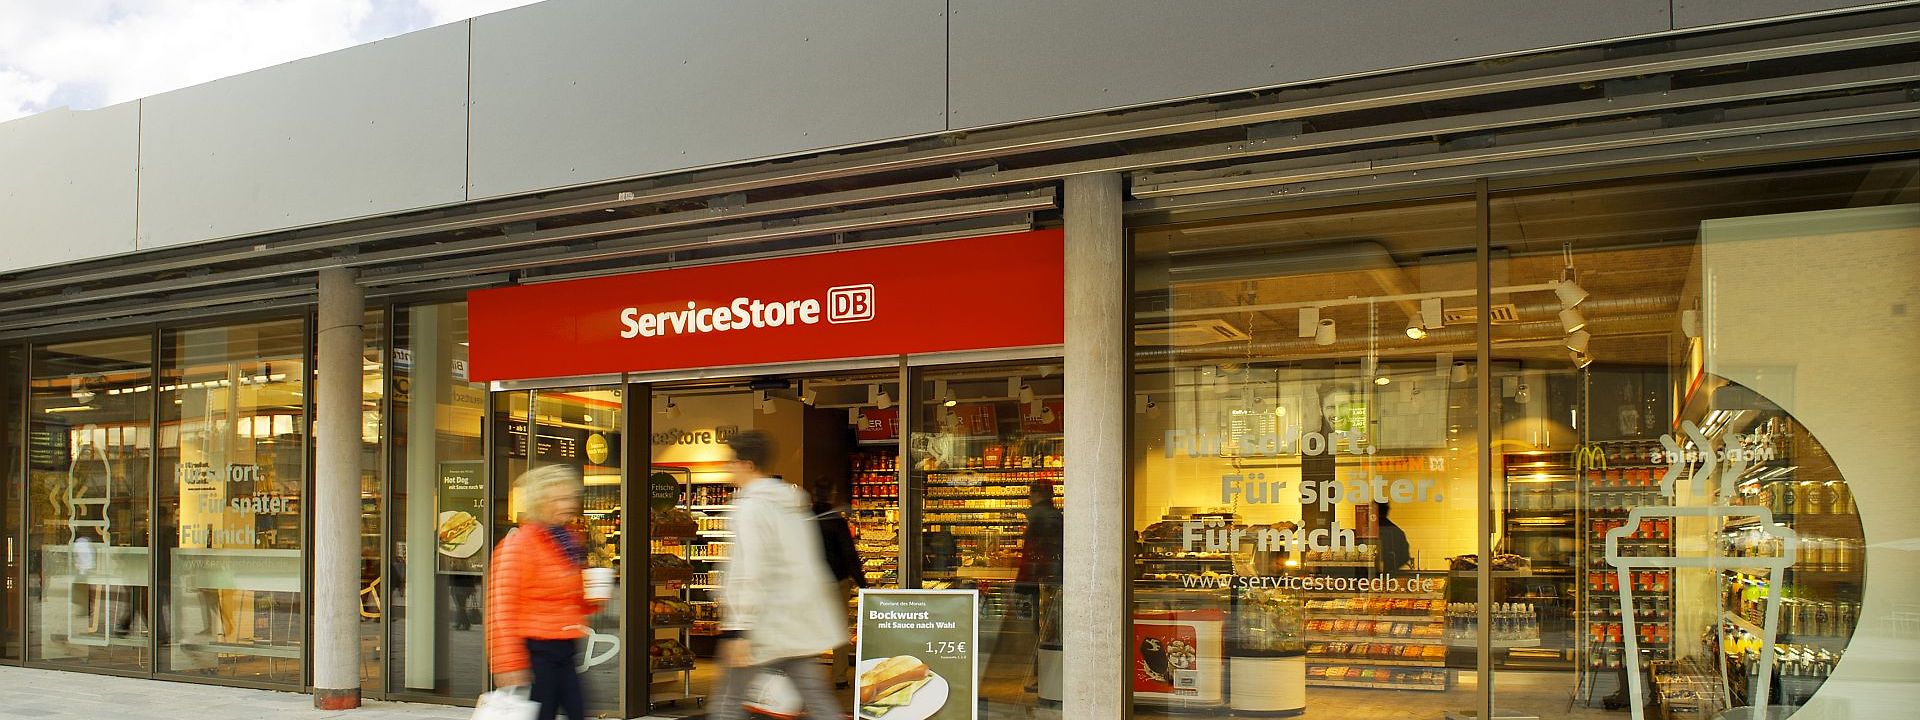 ServiceStore